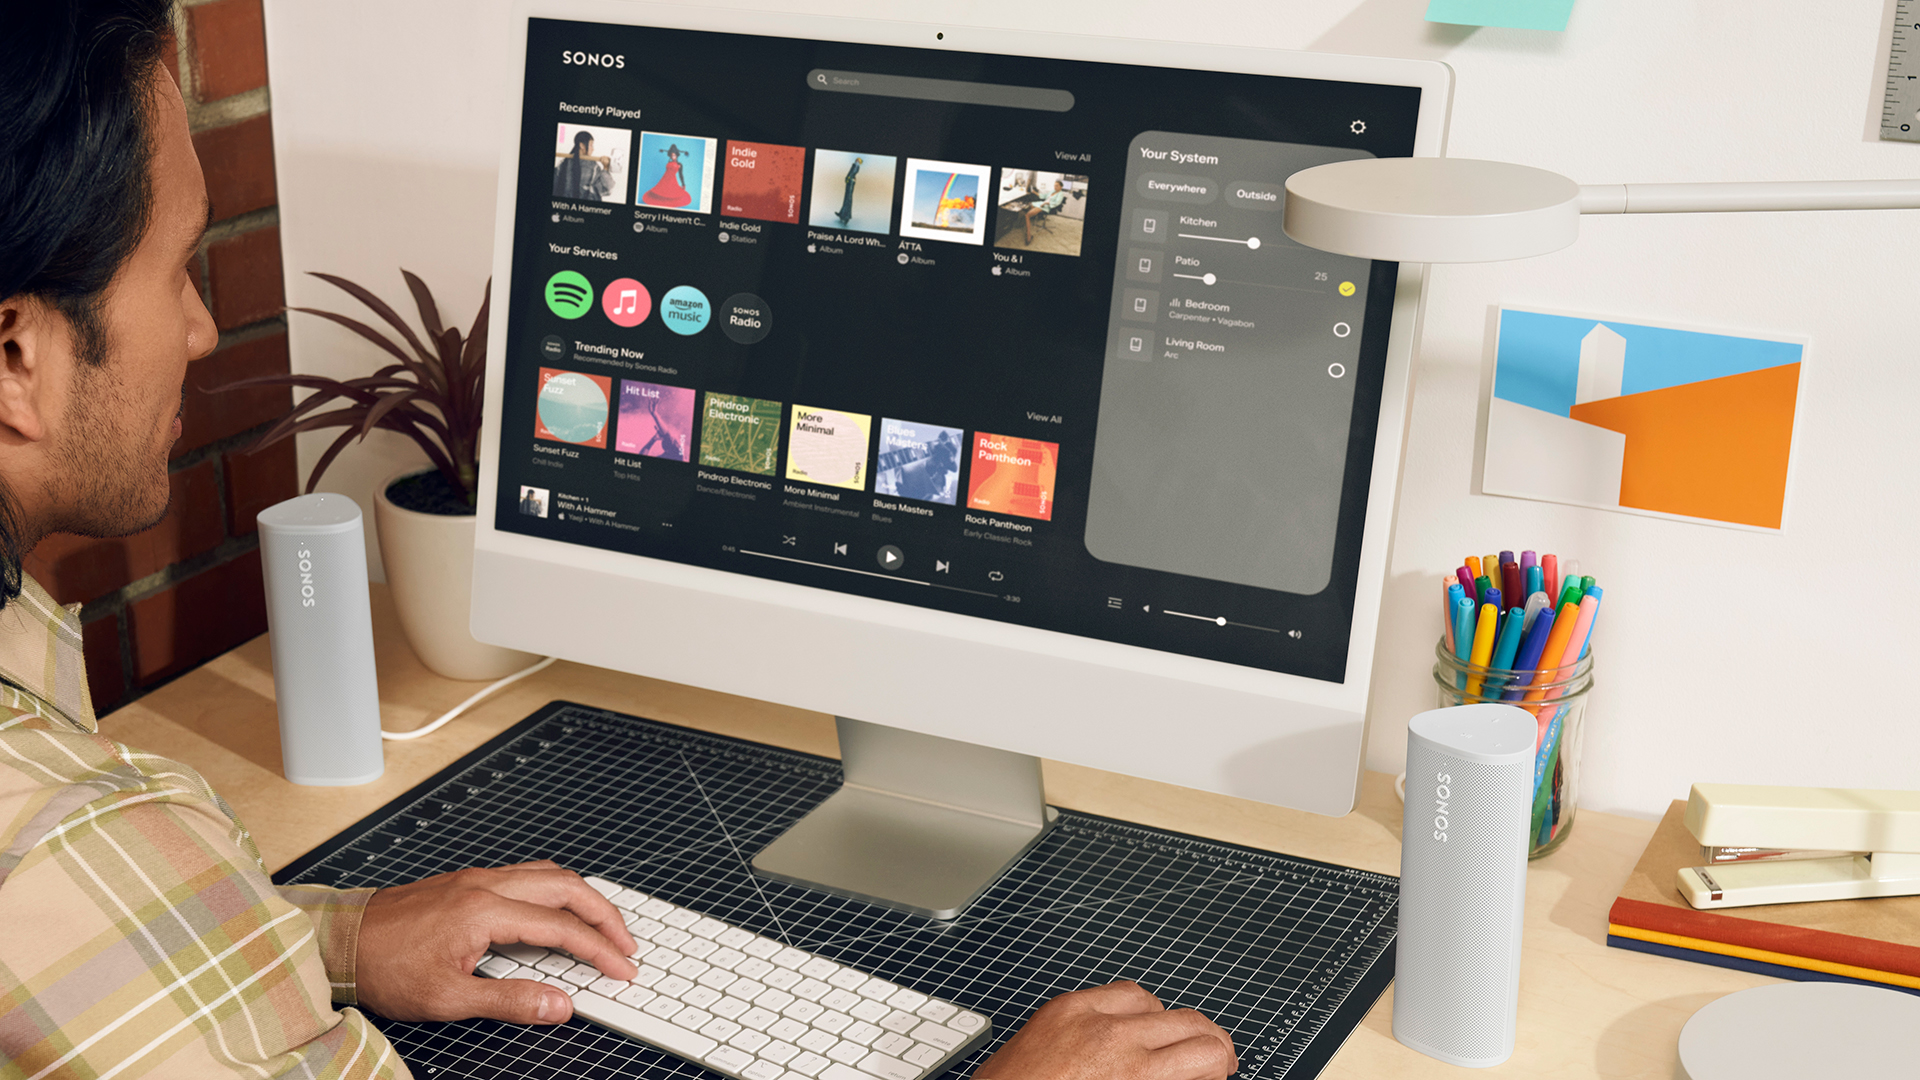 Sonos' новое веб-приложение, показывающее главный экран и воспроизводящие динамики